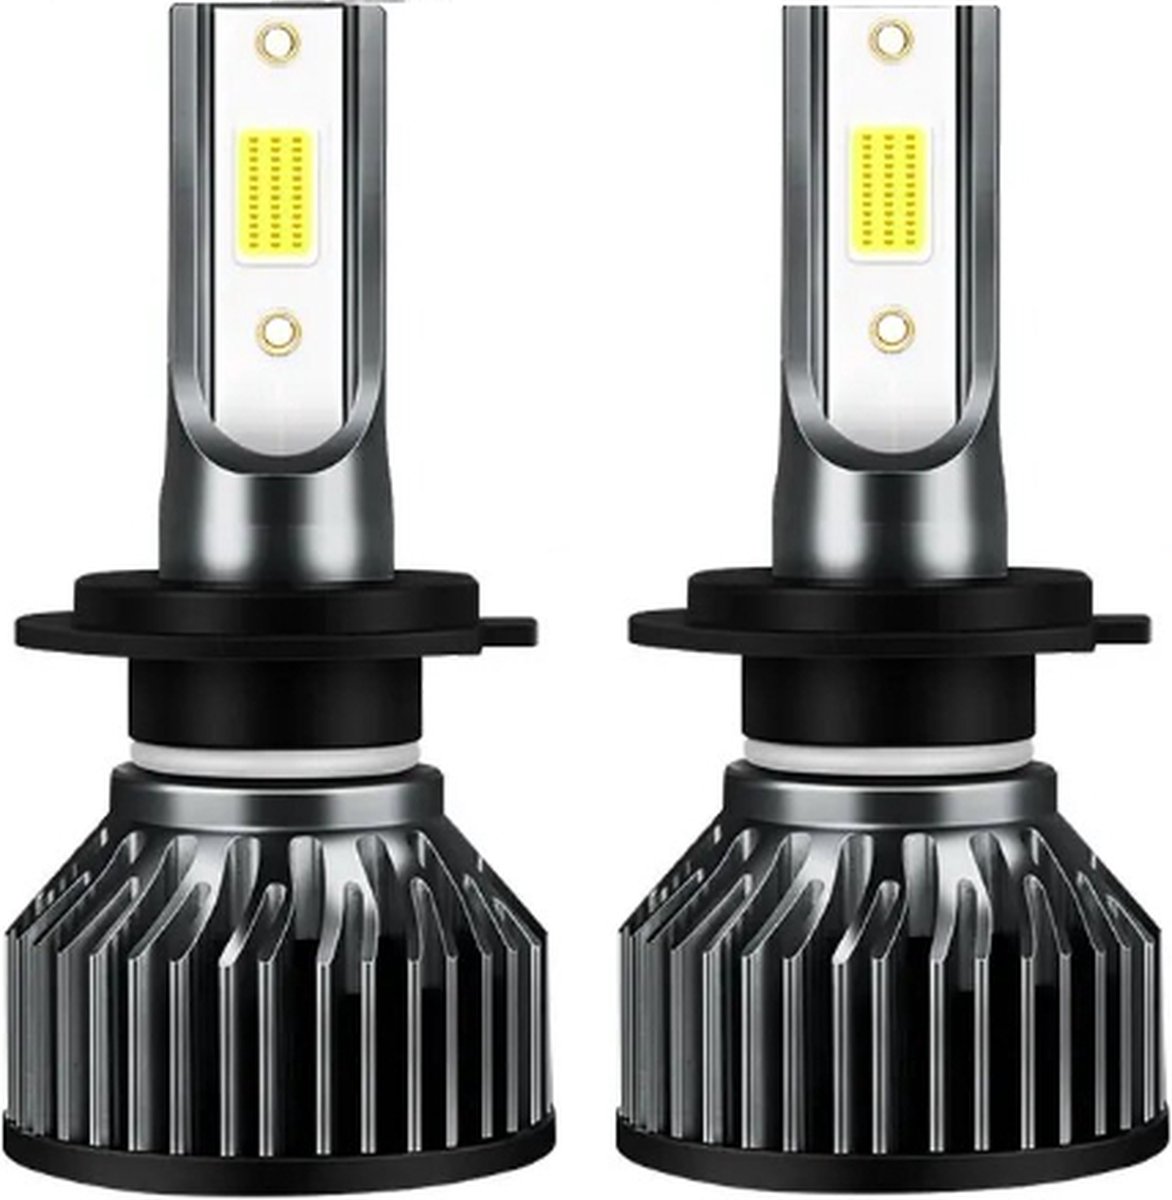 TLVX H7 55Watt Mini LED lampen – Canbus – Koplampen – Motor - Headlights - 6000K wit licht – Autoverlichting – 12V – 55w halogeen vervanger - Dimlicht – Grootlicht – 28.000 Lumen (2 stuks)